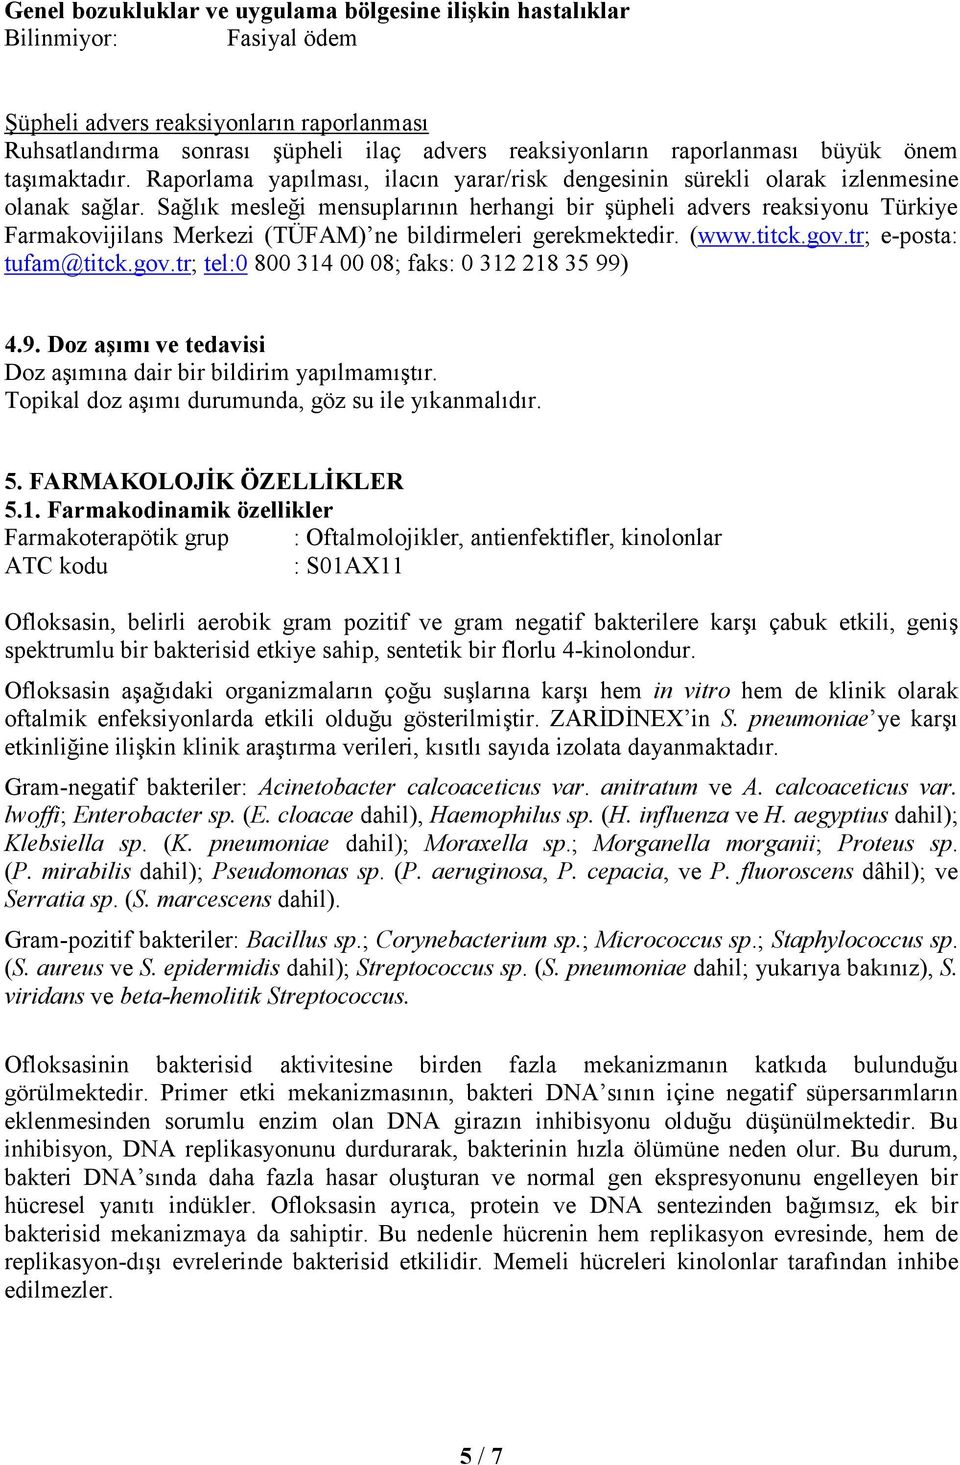 Sağlık mesleği mensuplarının herhangi bir şüpheli advers reaksiyonu Türkiye Farmakovijilans Merkezi (TÜFAM) ne bildirmeleri gerekmektedir. (www.titck.gov.